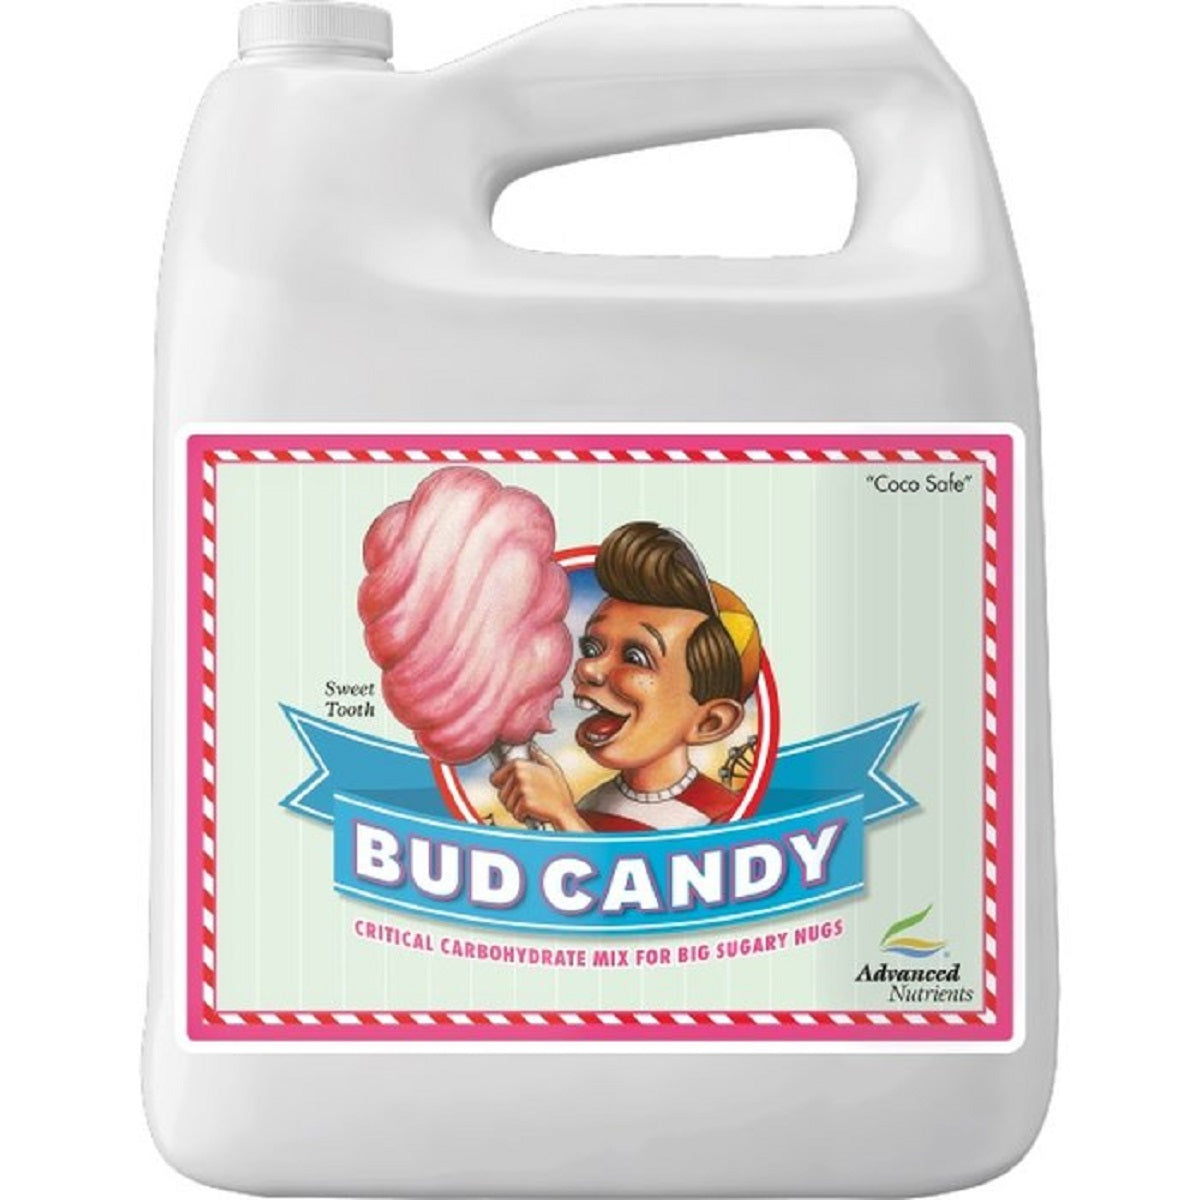 Booster de floraison Advanced Nutrients Bud Candy 10 litres